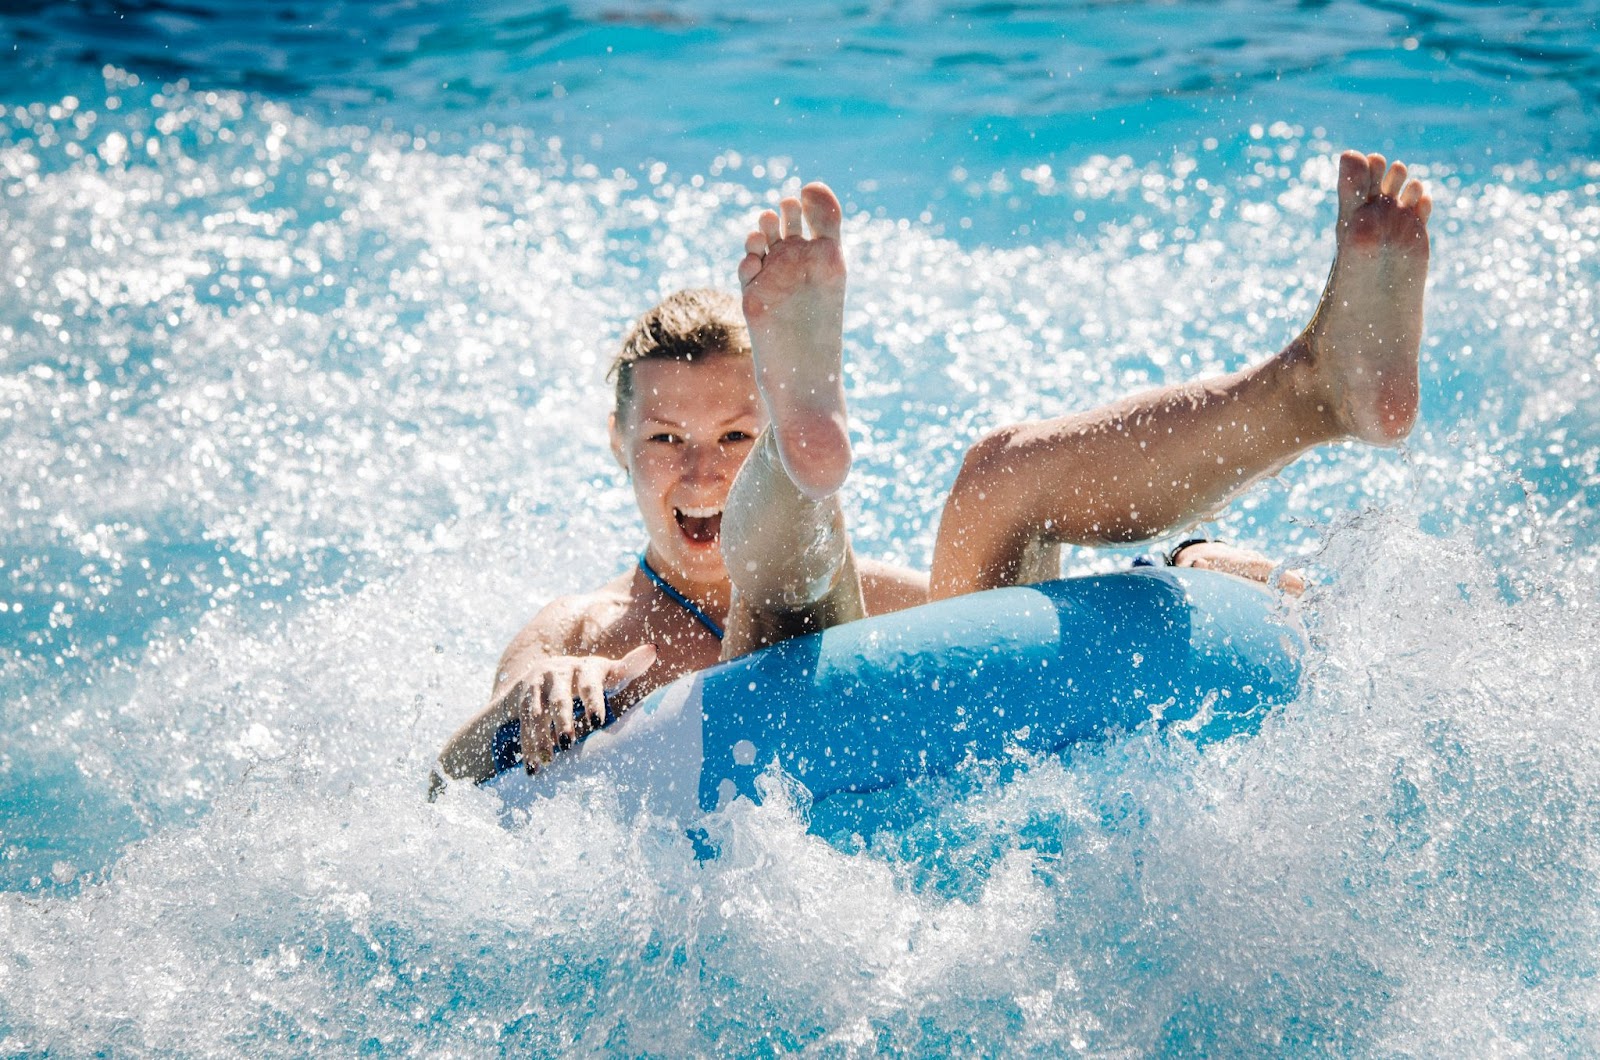 A mulher dá risada enquanto se equilibra sentada na boia caindo na piscina.